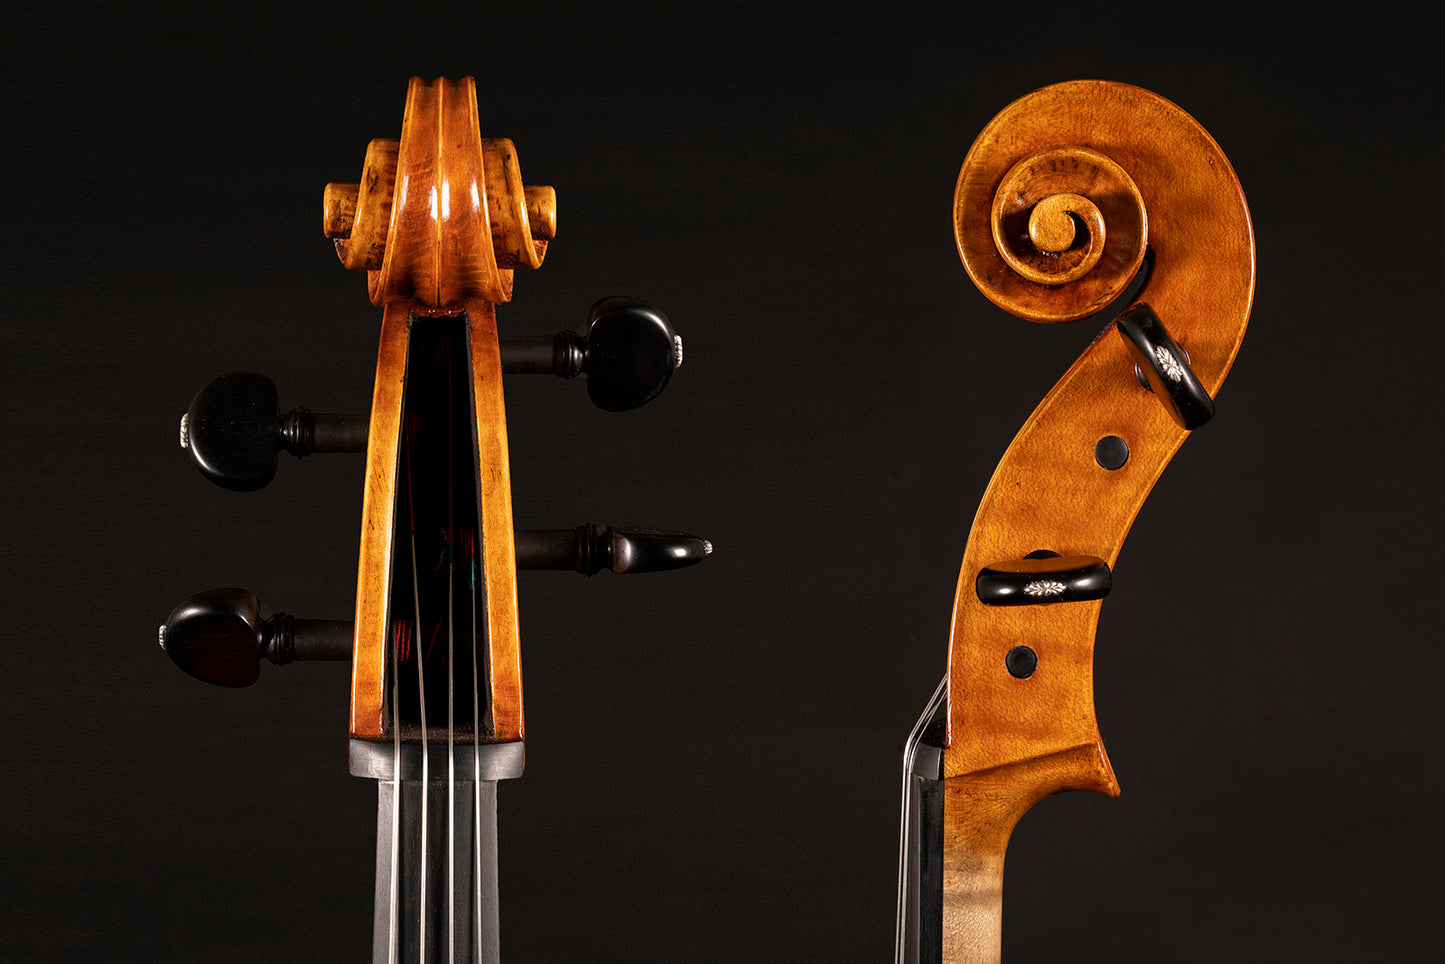 Vettori Paolo Cello Mod. Jb Guadagnini "David" Firenze 2020